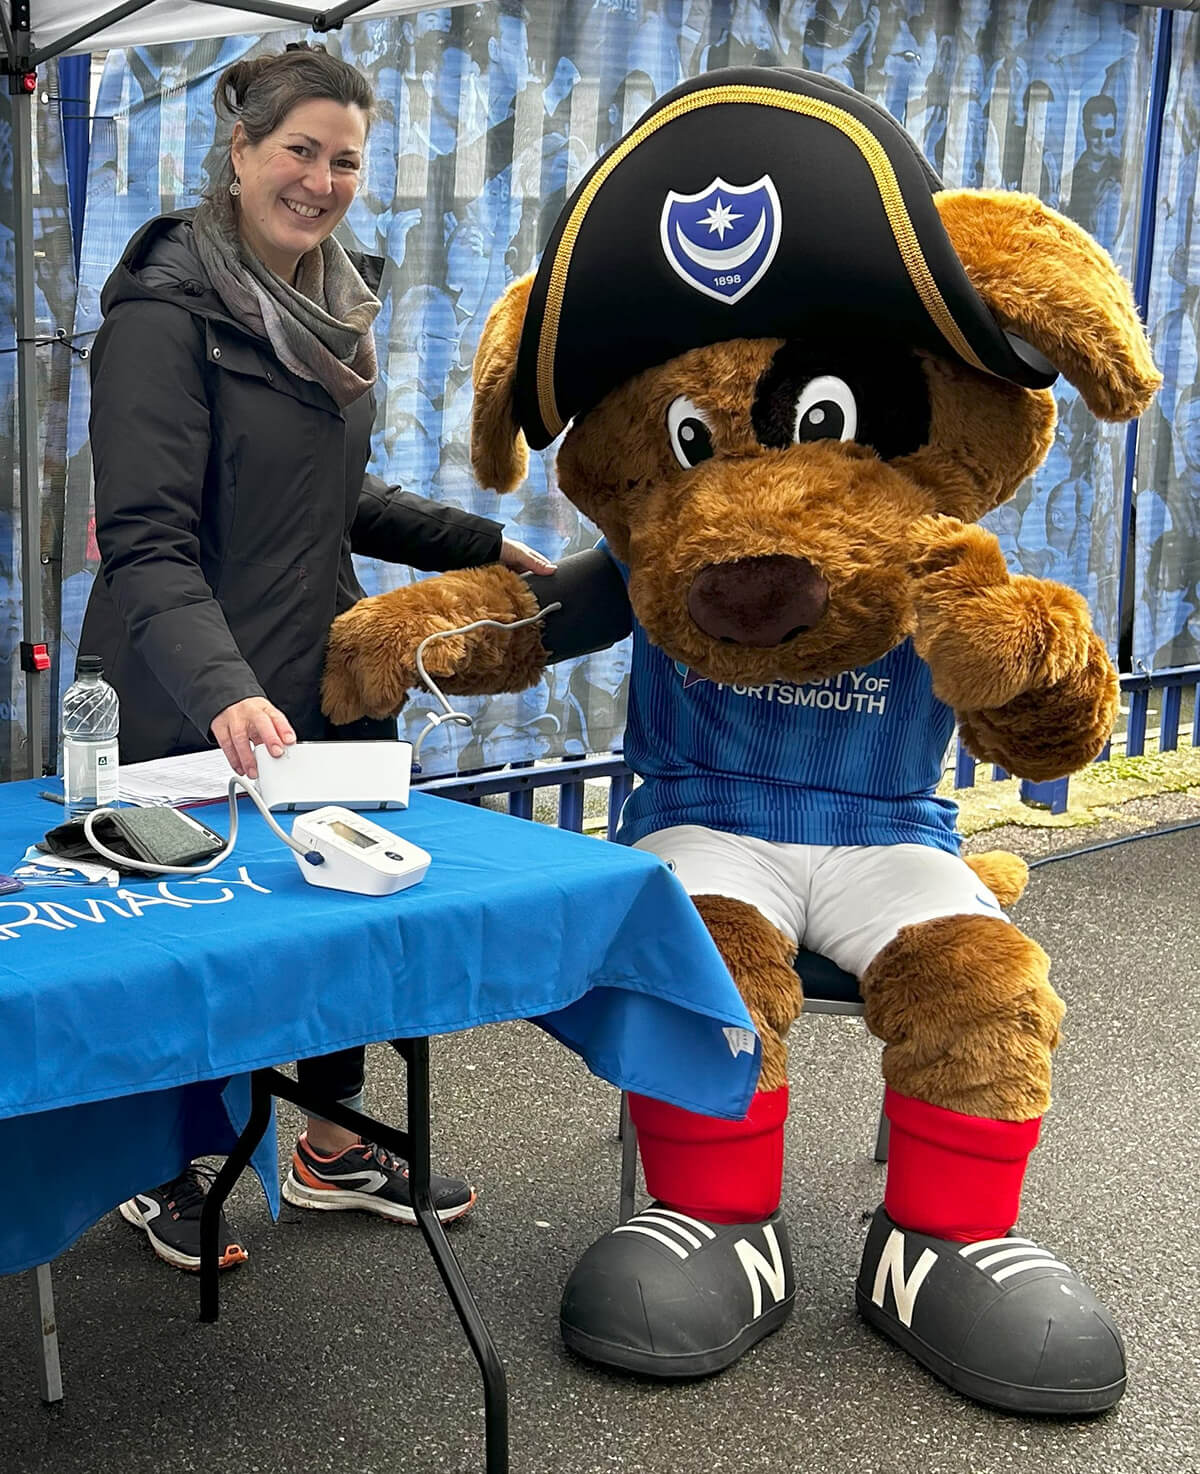 Portsmouth FC mascot having blood pressure check